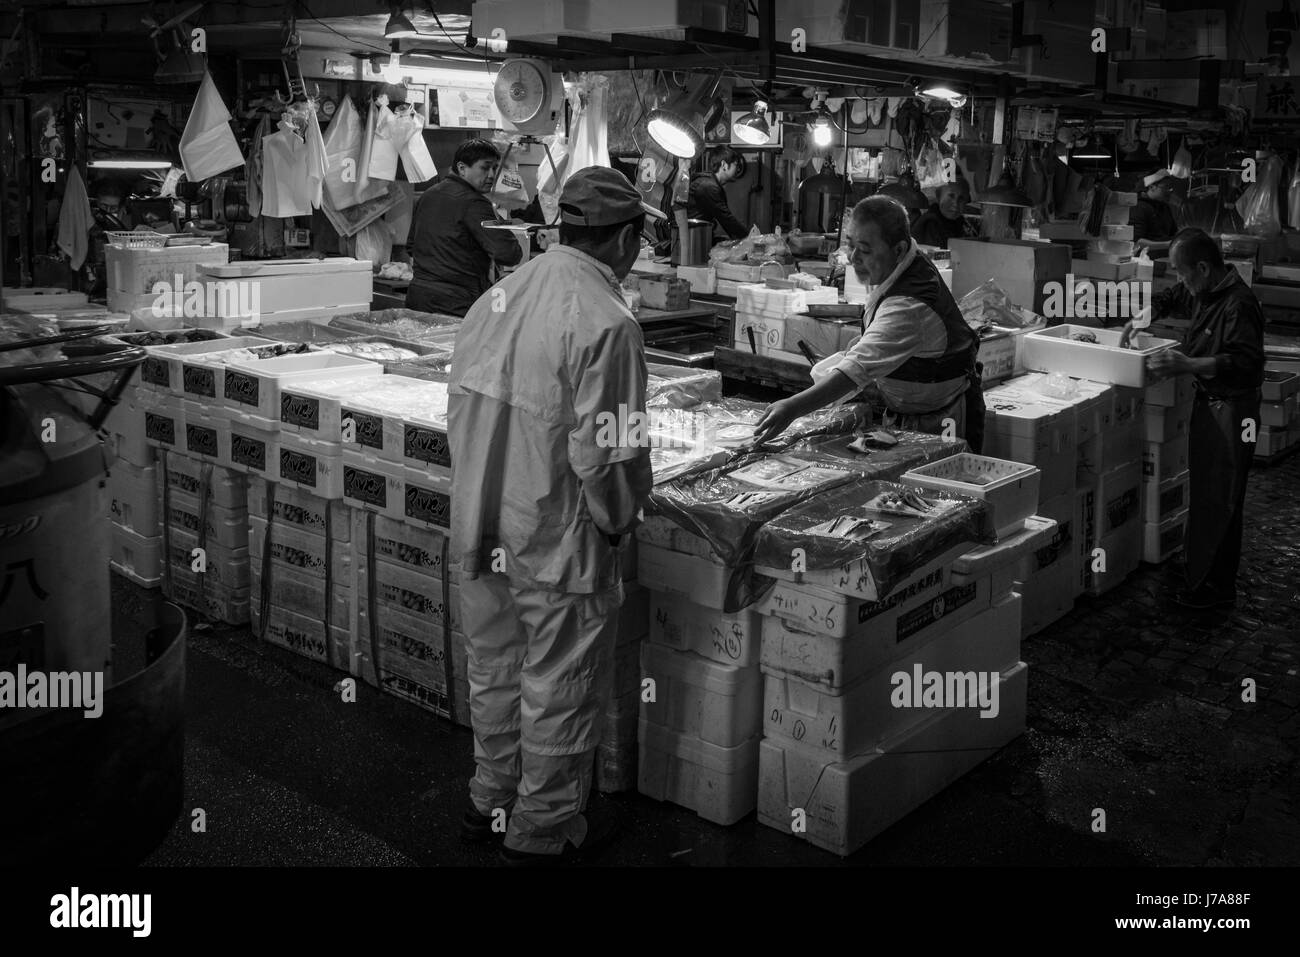 Foto in bianco e nero del mercato del pesce Tsukiji con molti uomini giapponesi occupato a gestire e mettere il pesce in grandi scatole di polistirolo da caselle. Foto Stock